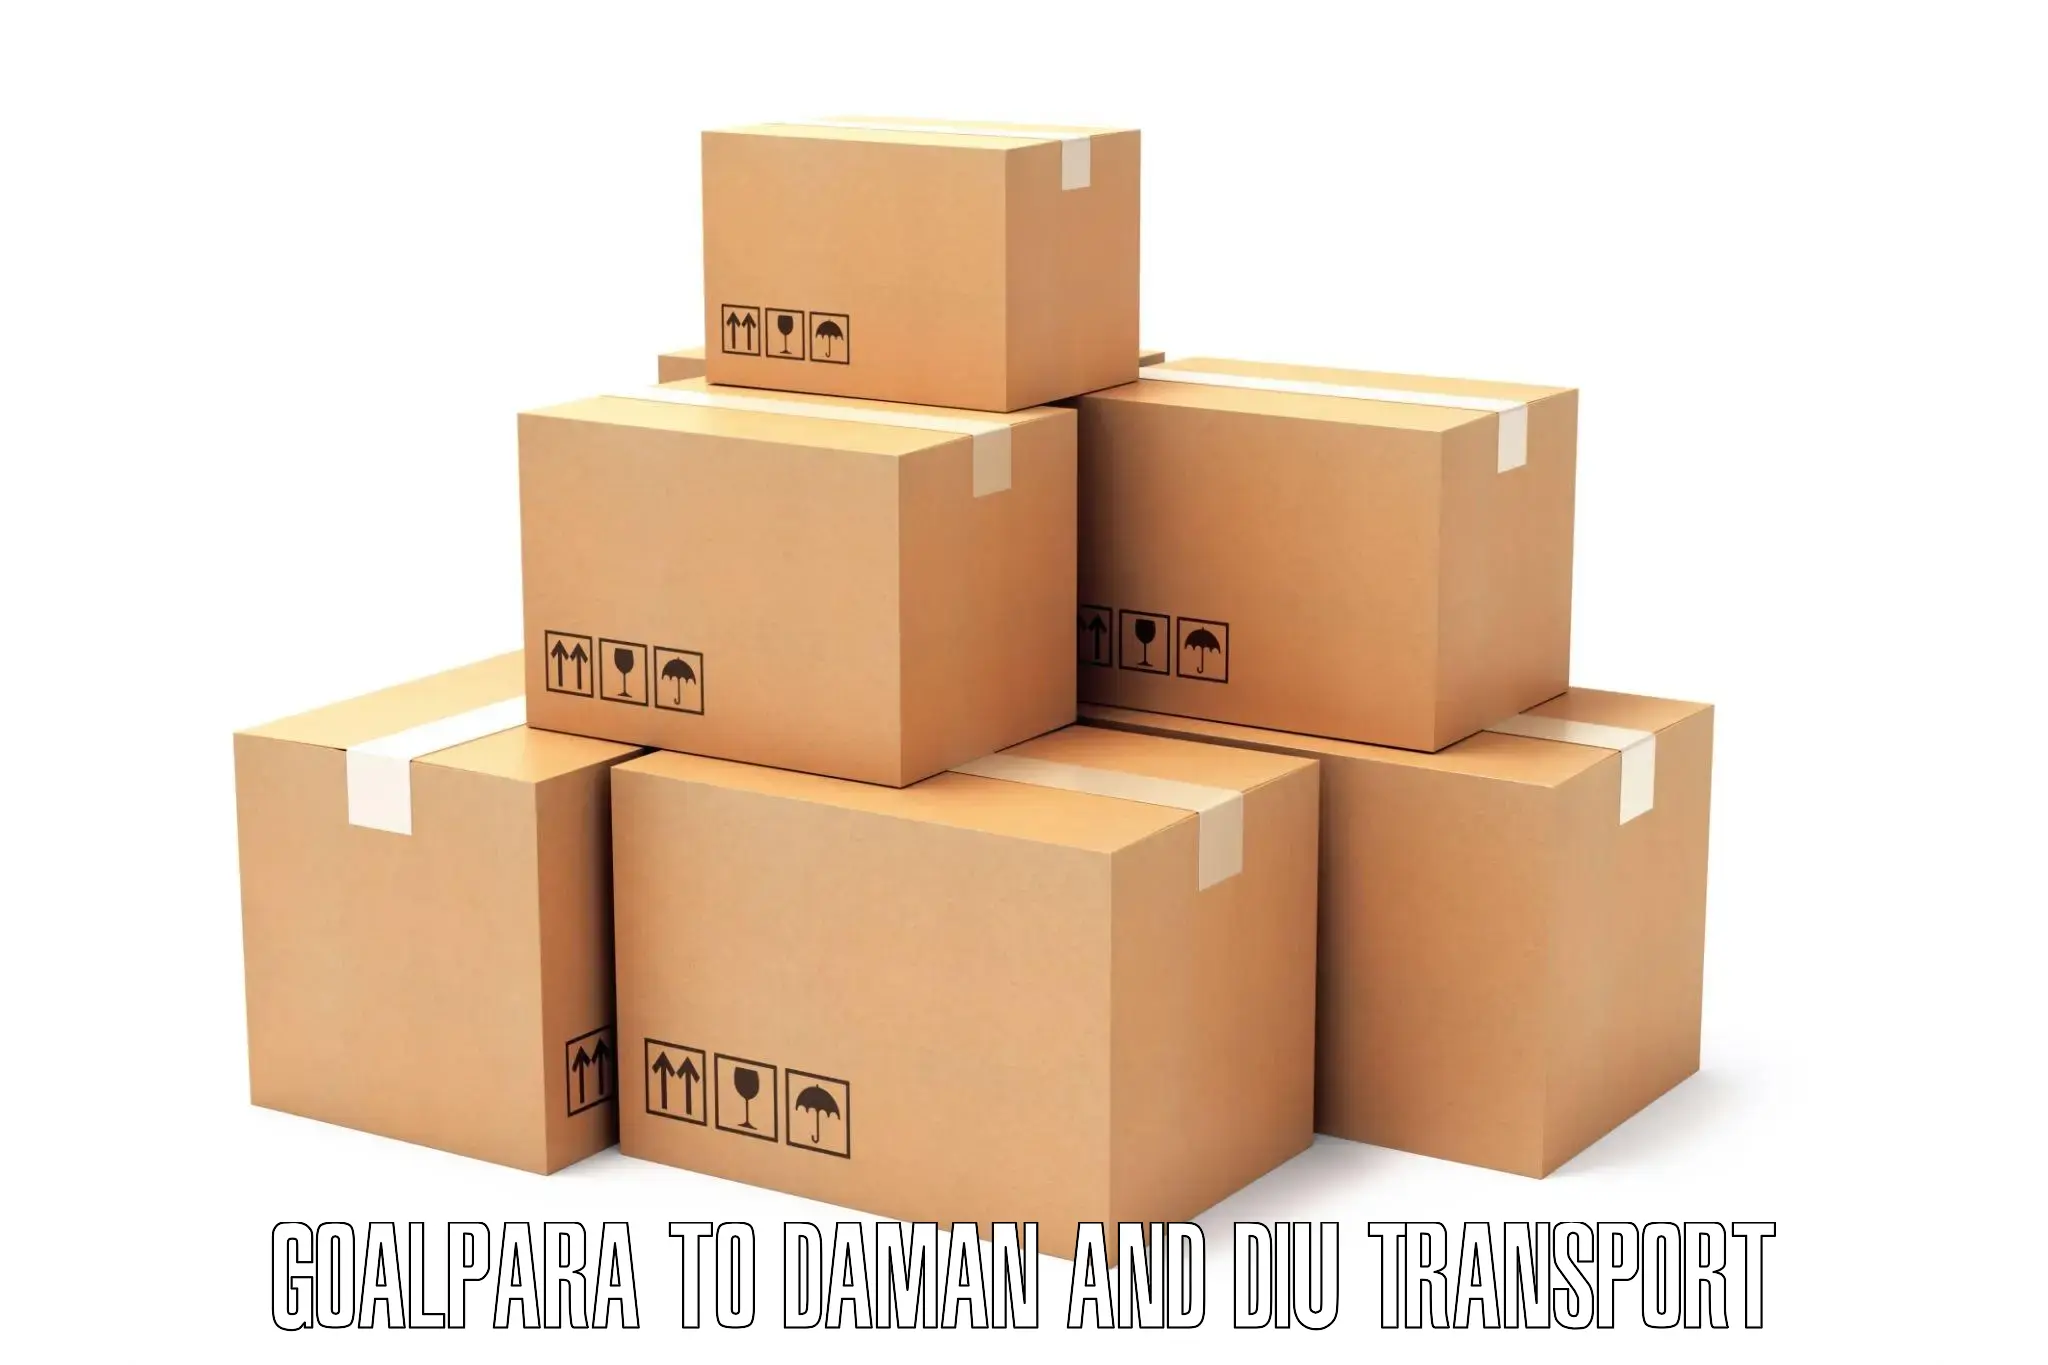 Logistics transportation services Goalpara to Daman